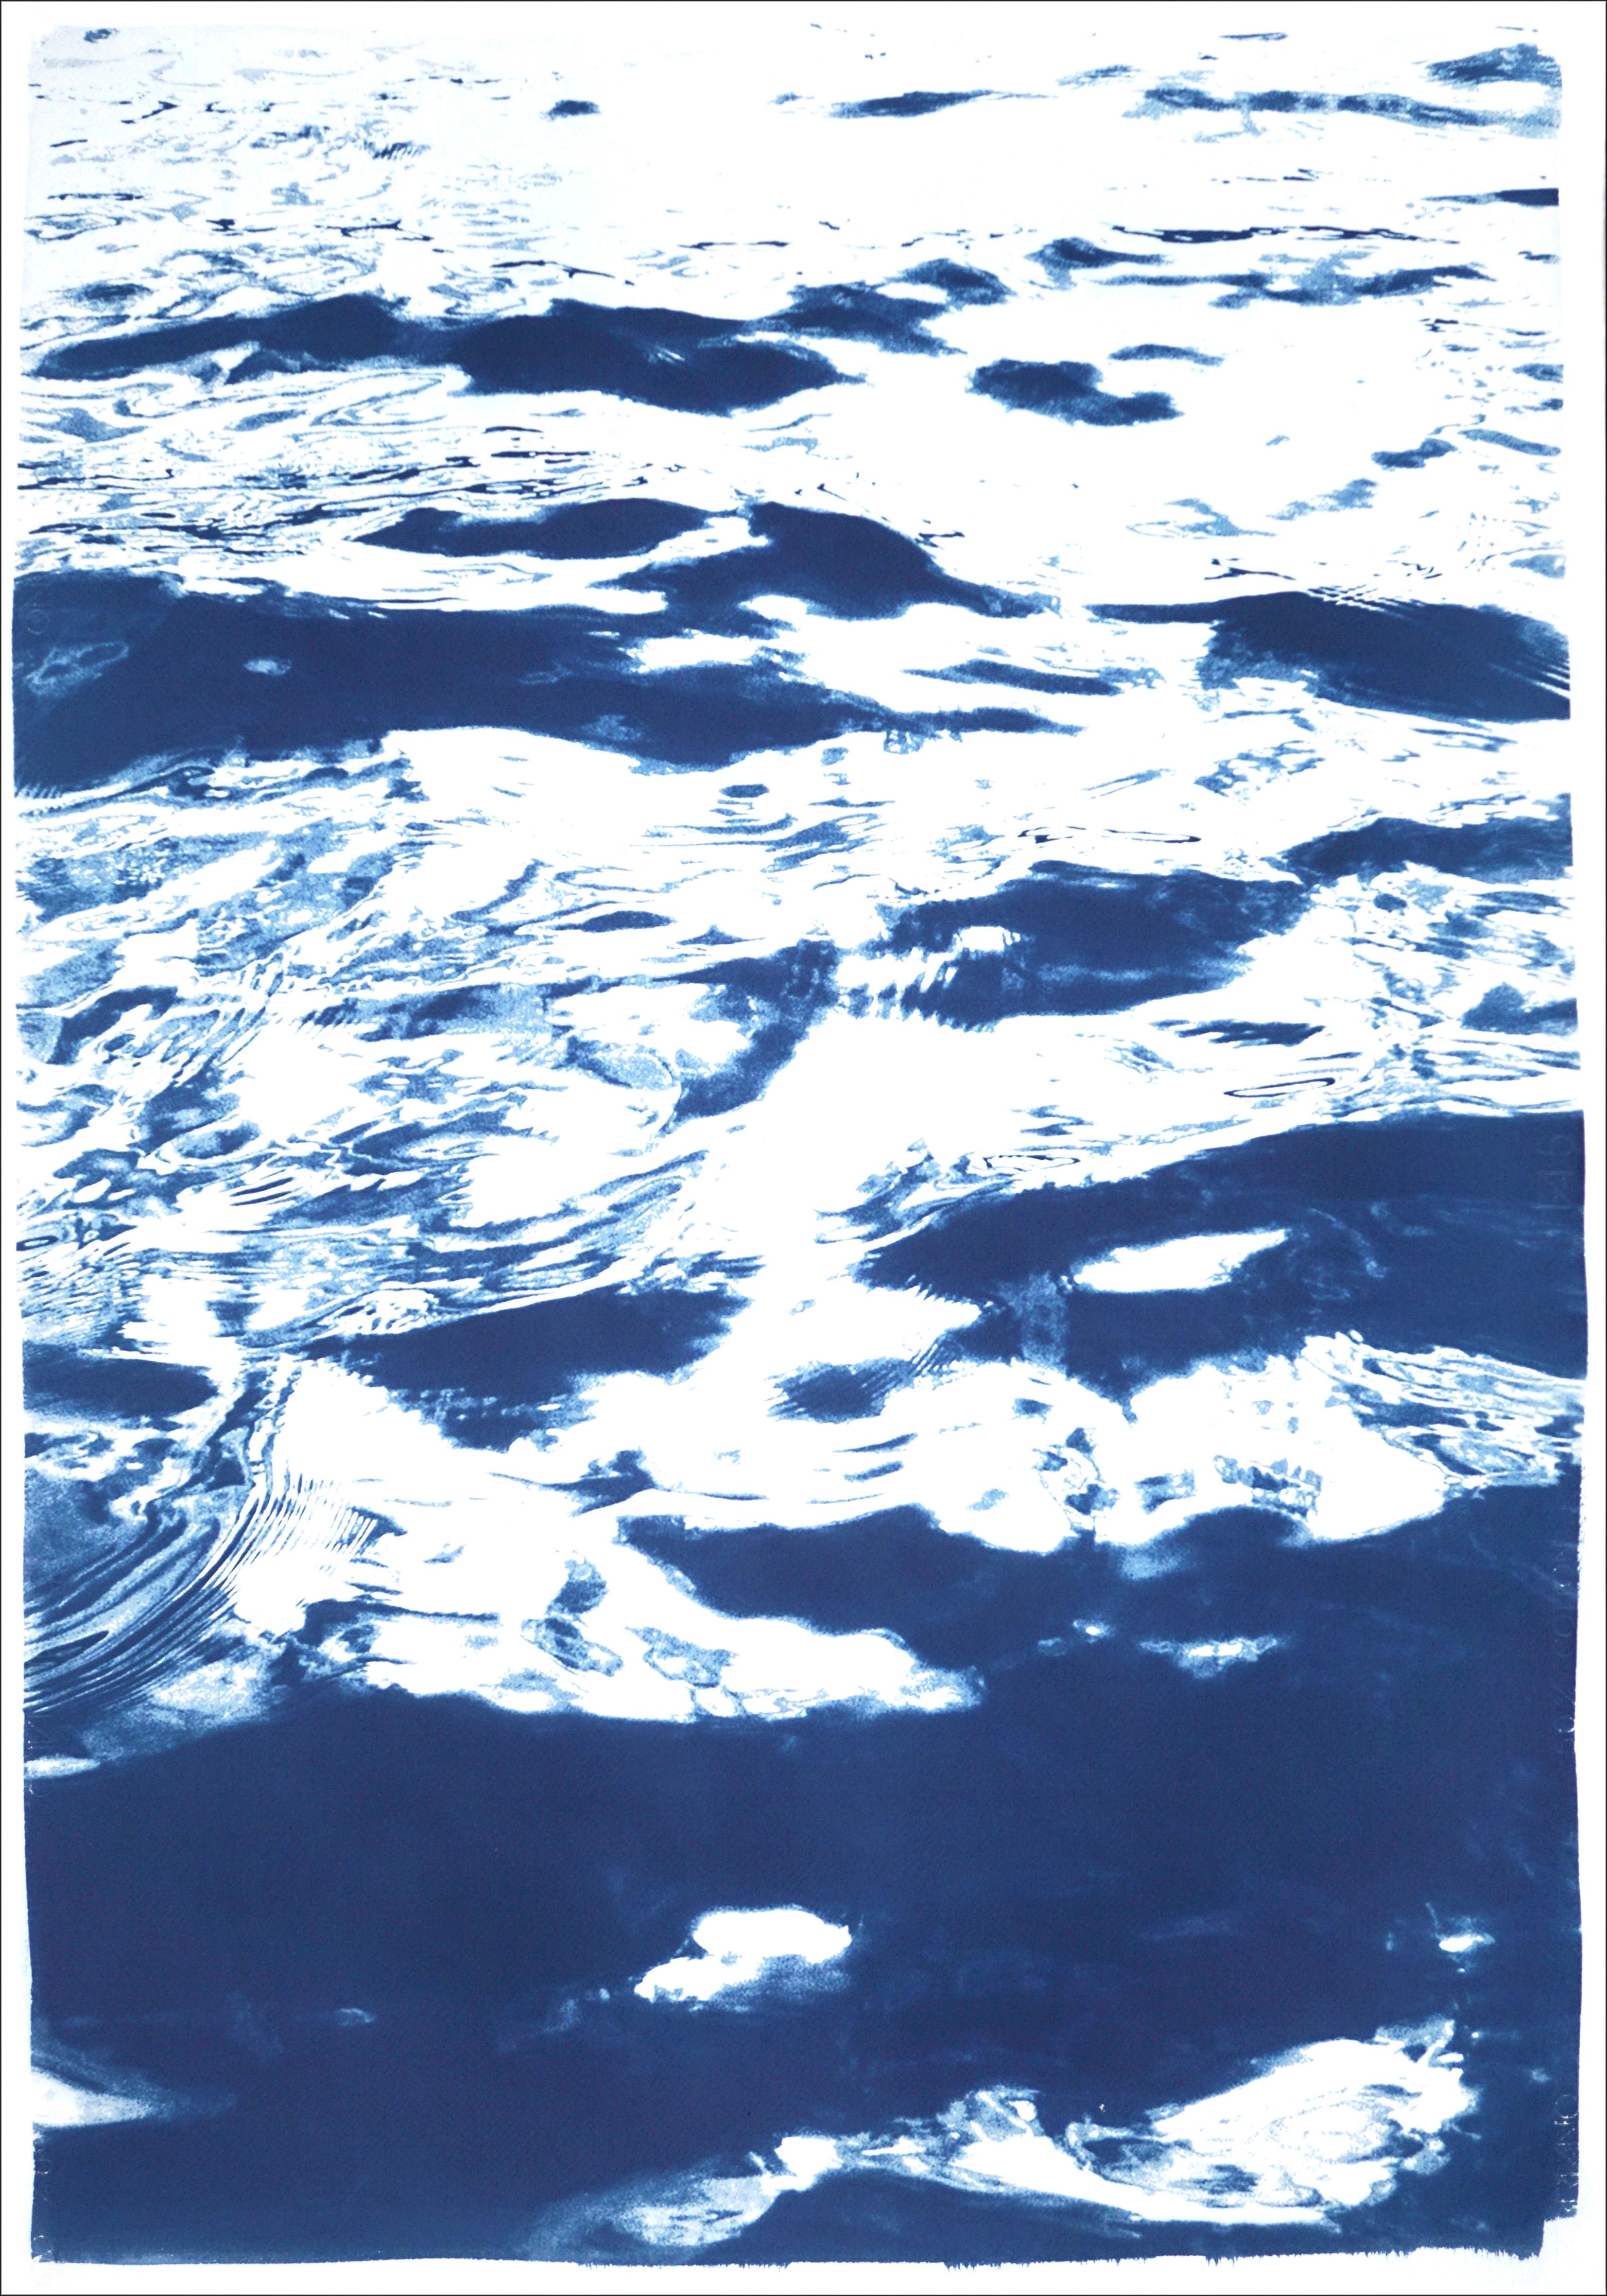 Il s'agit d'un cyanotype exclusif imprimé à la main en édition limitée.
Ce magnifique triptyque s'intitule 